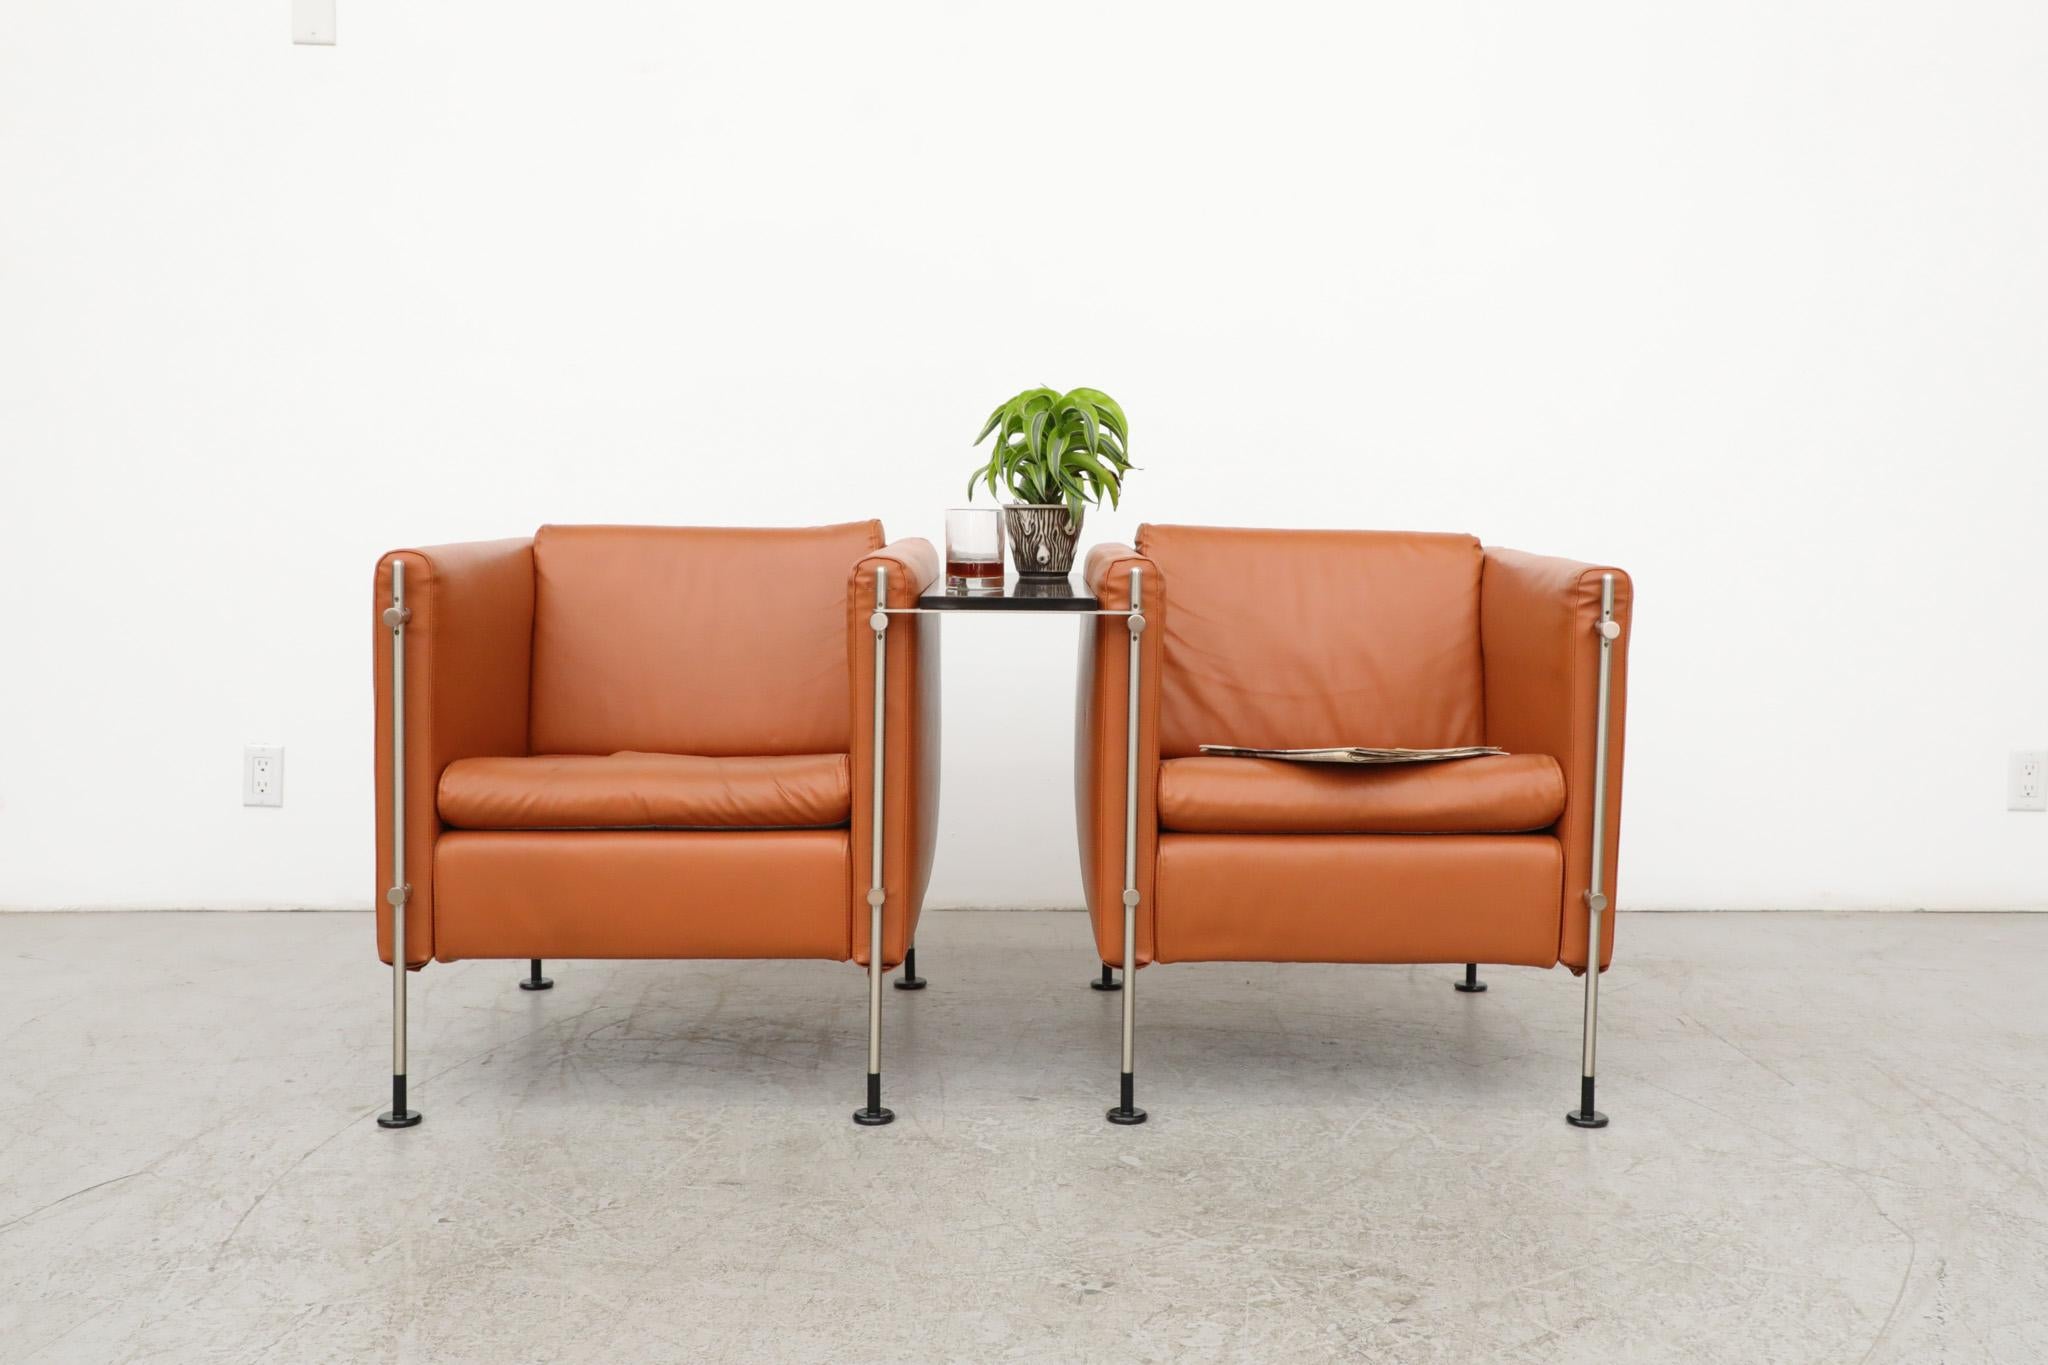 Impressionnante paire de chaises longues 'Felix' de couleur orange brûlé, datant du milieu du siècle dernier, conçues par Burkhard Vogtherr pour le fabricant de meubles italien Arflex, figure de proue du design italien depuis 1947. Cet ensemble a